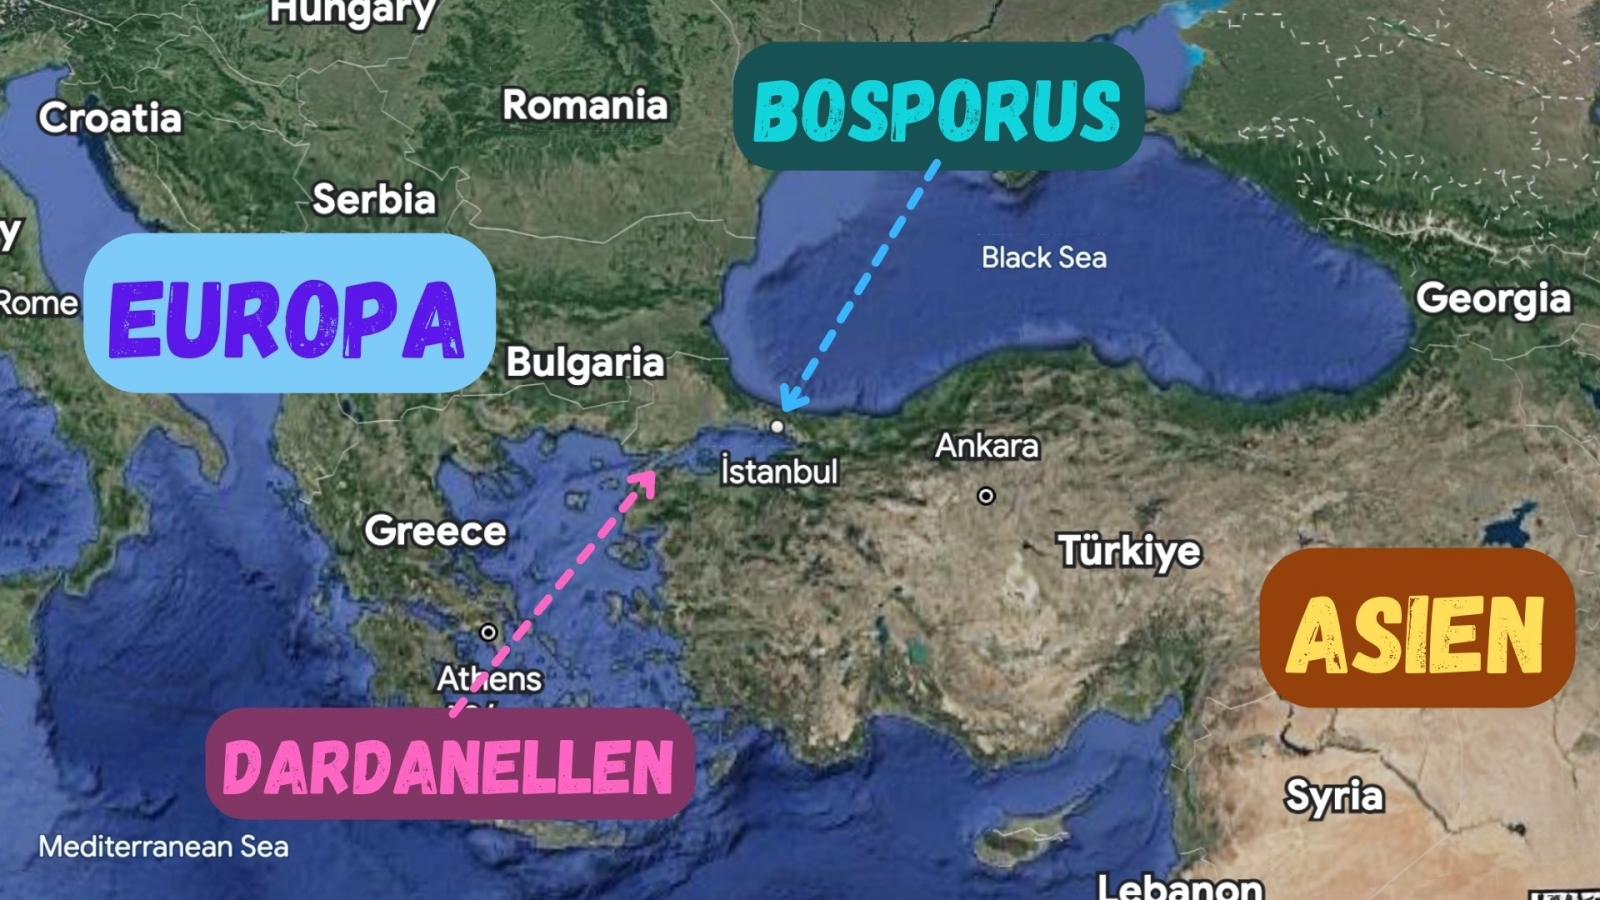 Europa-Bosporus-Asien-Karte